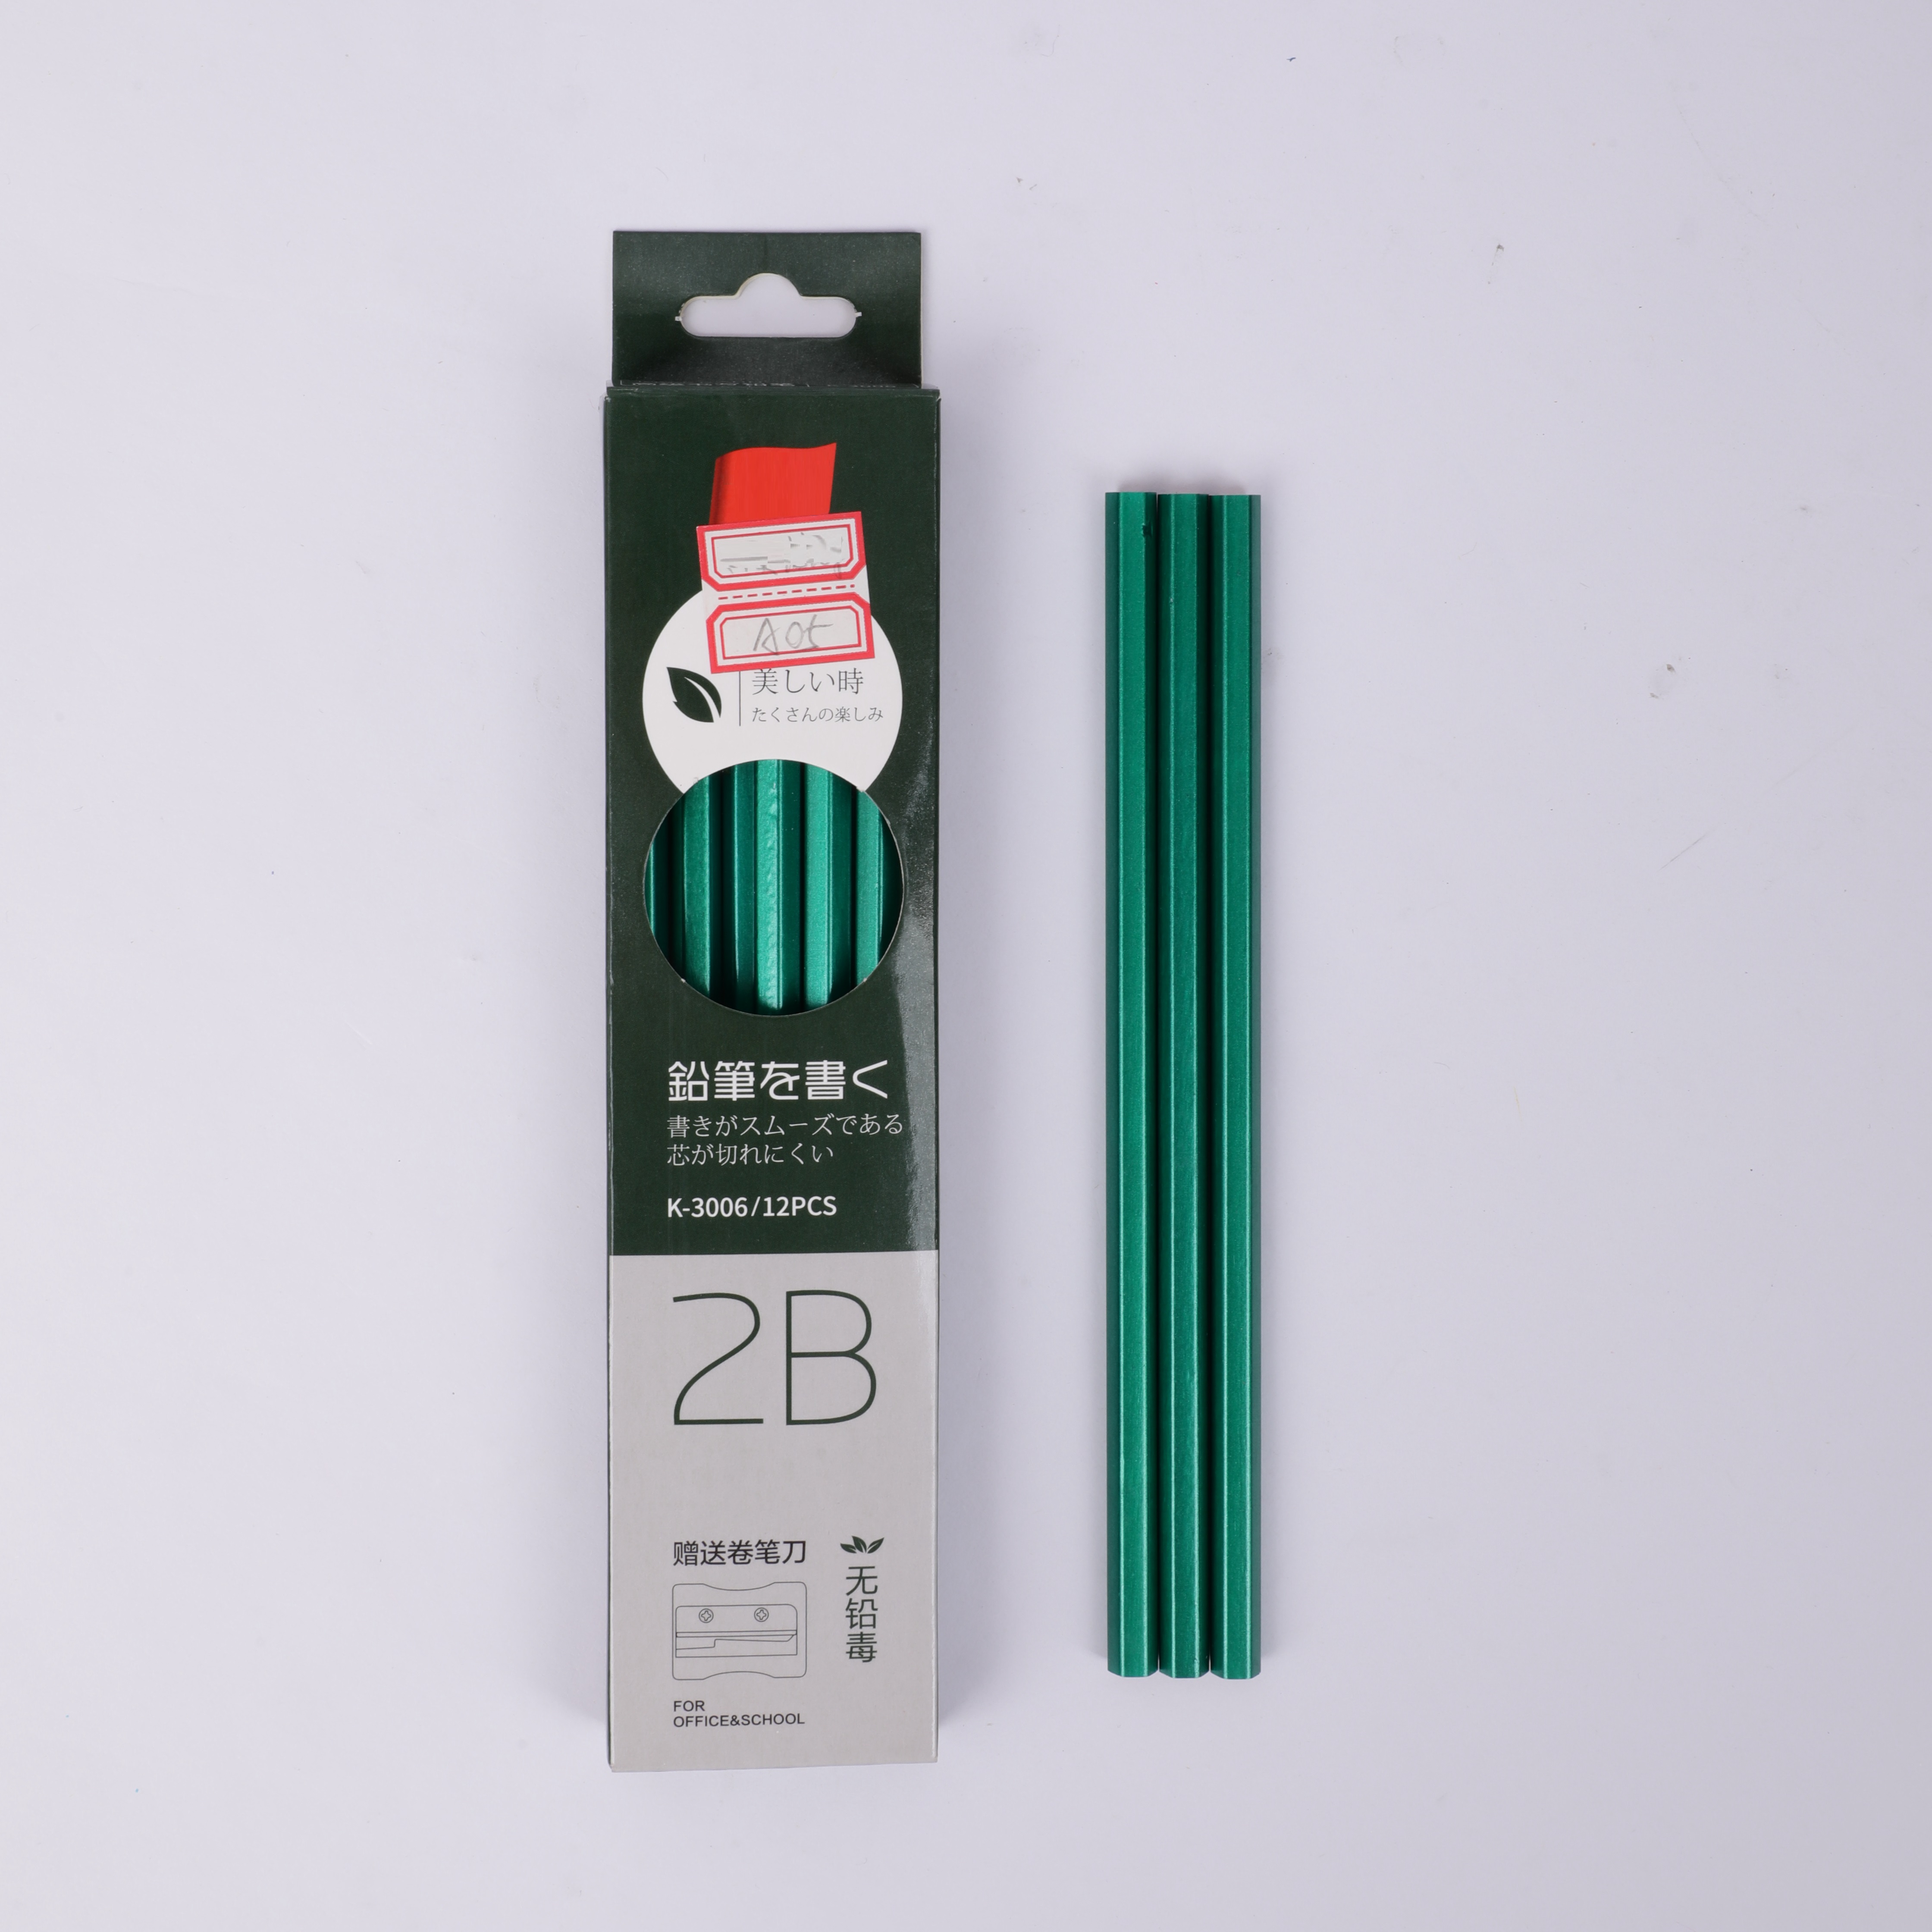 Чернографитный карандаш BEIFA BFA05 не заточенный 2В без ластика точилка в комплекте 12шт в коробке